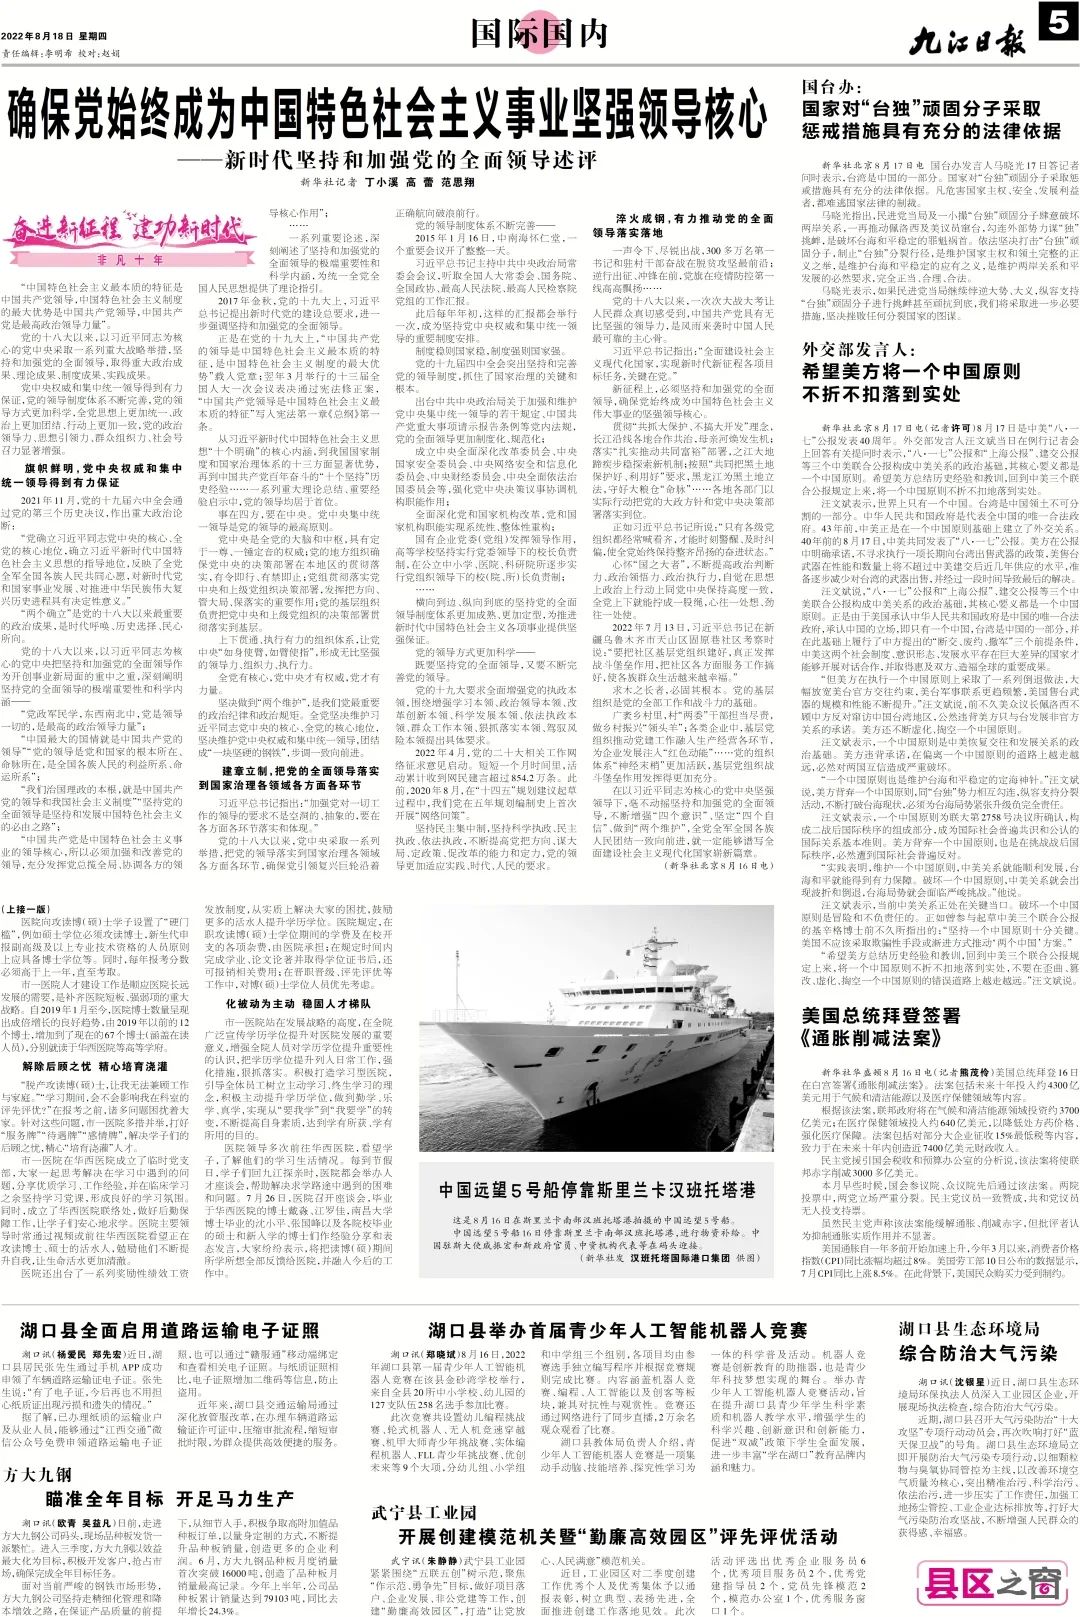 九江日报 818 头版：九江市第一人民医院以「鼓励奖励强制」六字推动人才建设 促进医院高质量发展